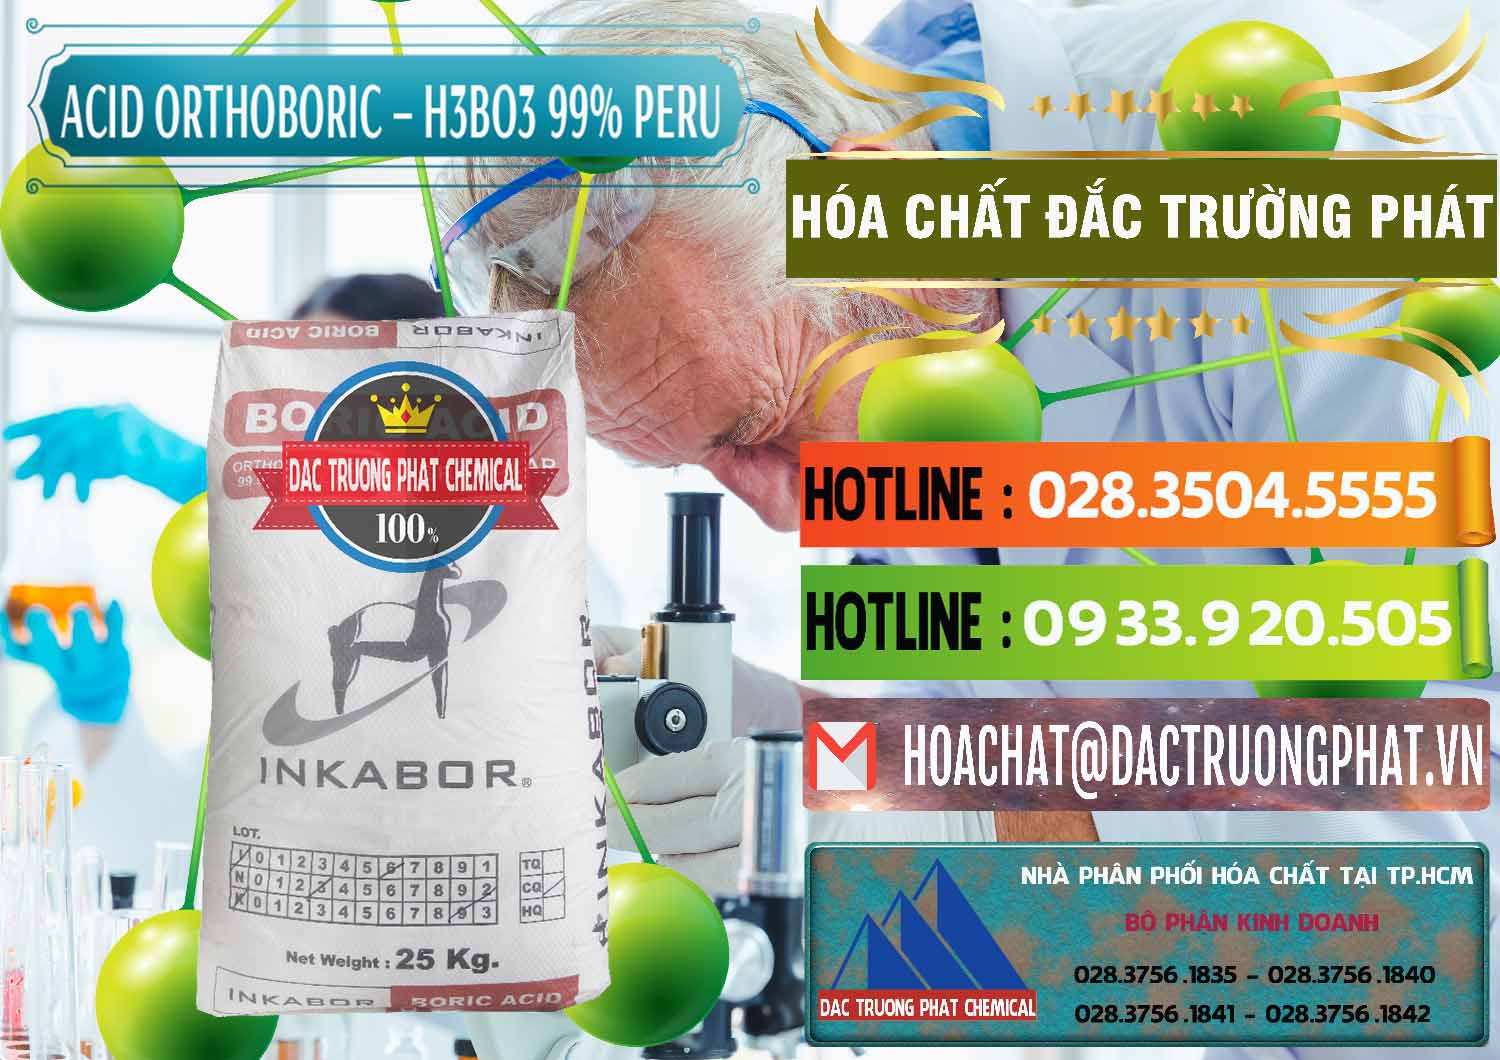 Công ty chuyên kinh doanh & bán Acid Boric – Axit Boric H3BO3 99% Inkabor Peru - 0280 - Cty chuyên bán _ phân phối hóa chất tại TP.HCM - cungcaphoachat.com.vn